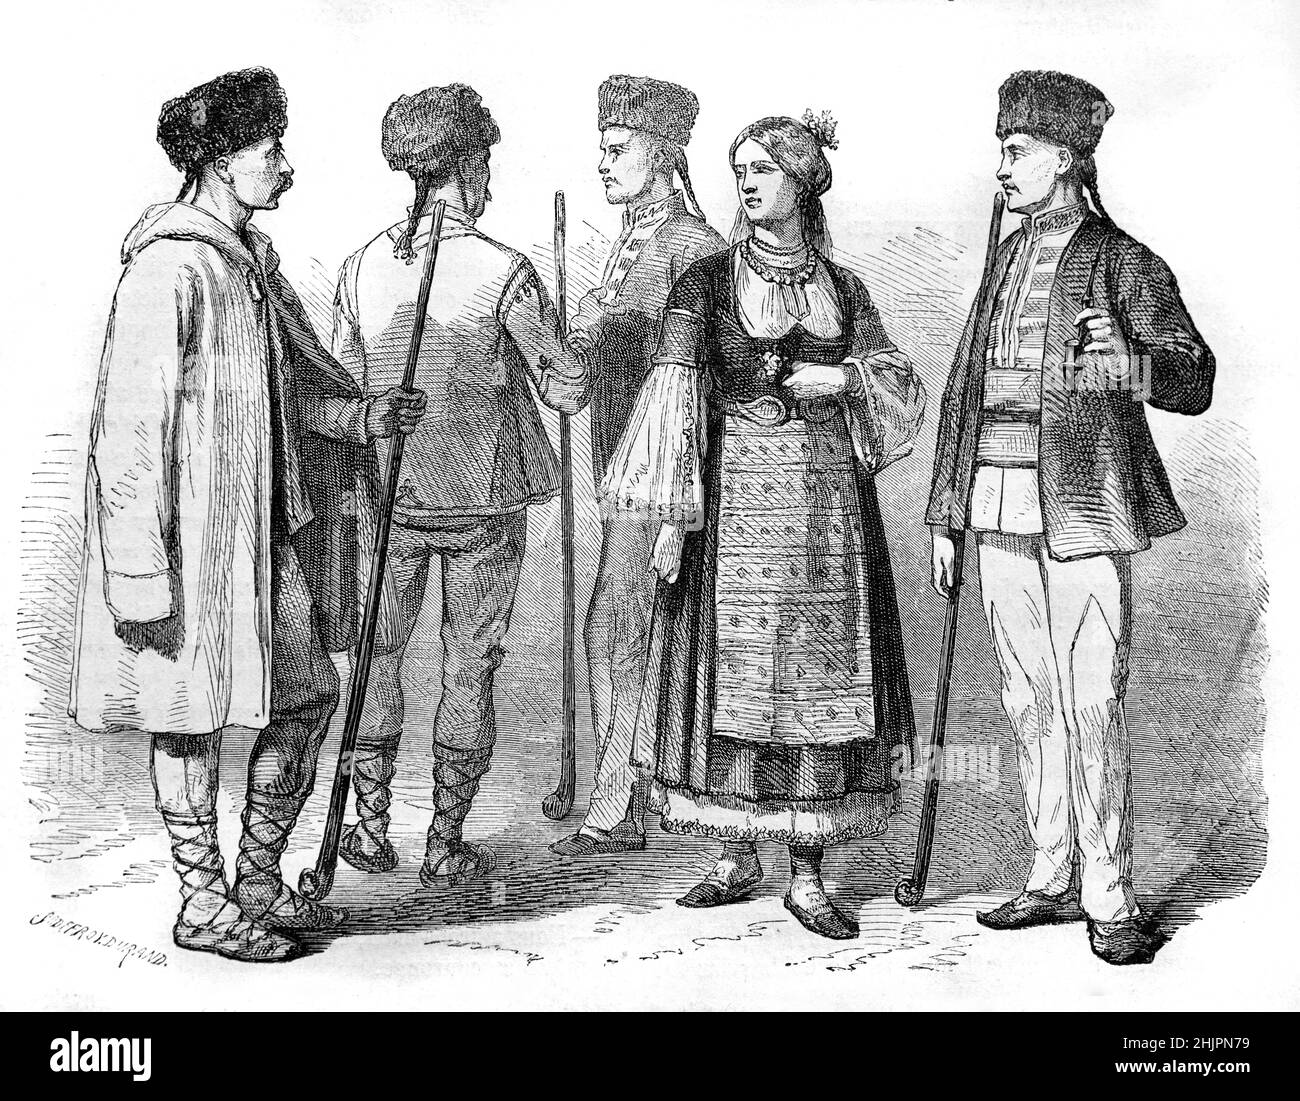 Illustration der Bulgaren in traditioneller Tracht, Folkloristische Tracht der Nationaltracht. Vintage Illustration oder Gravur 1865. Stockfoto